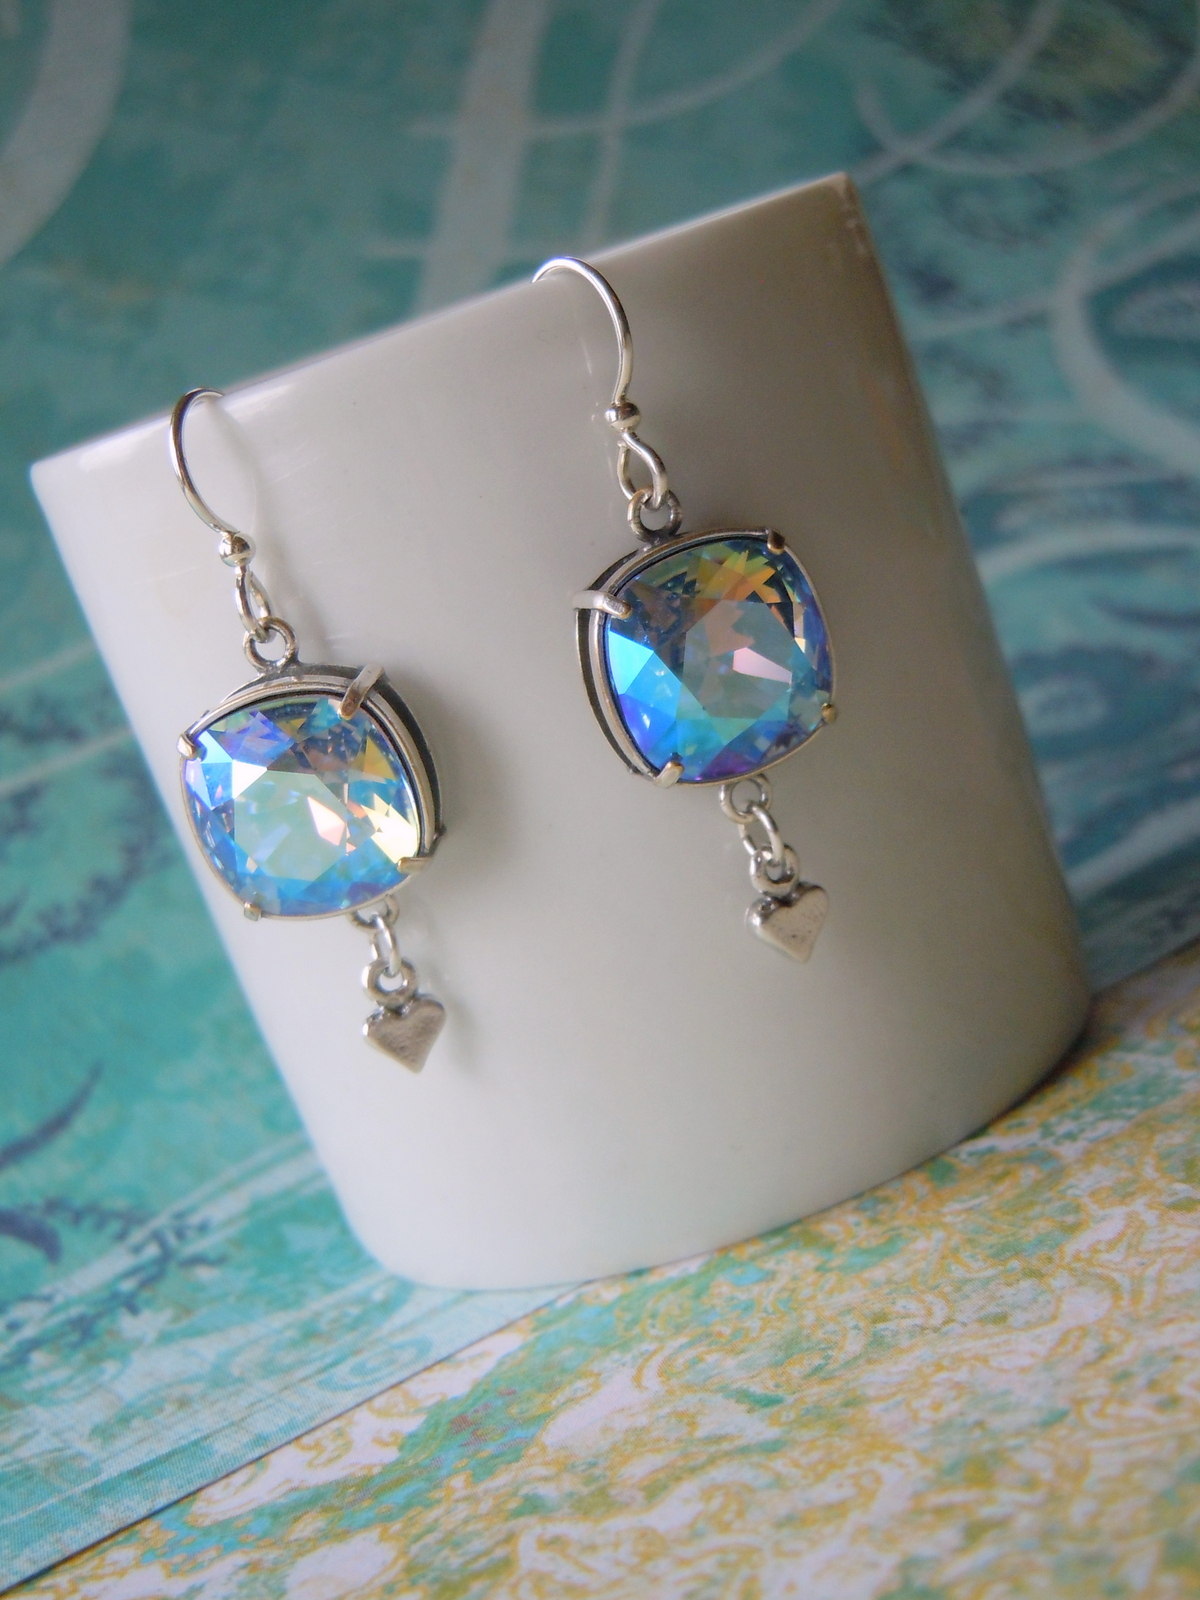 Blue Valentine Earrings by Rings & Things Designer Mollie Valente.